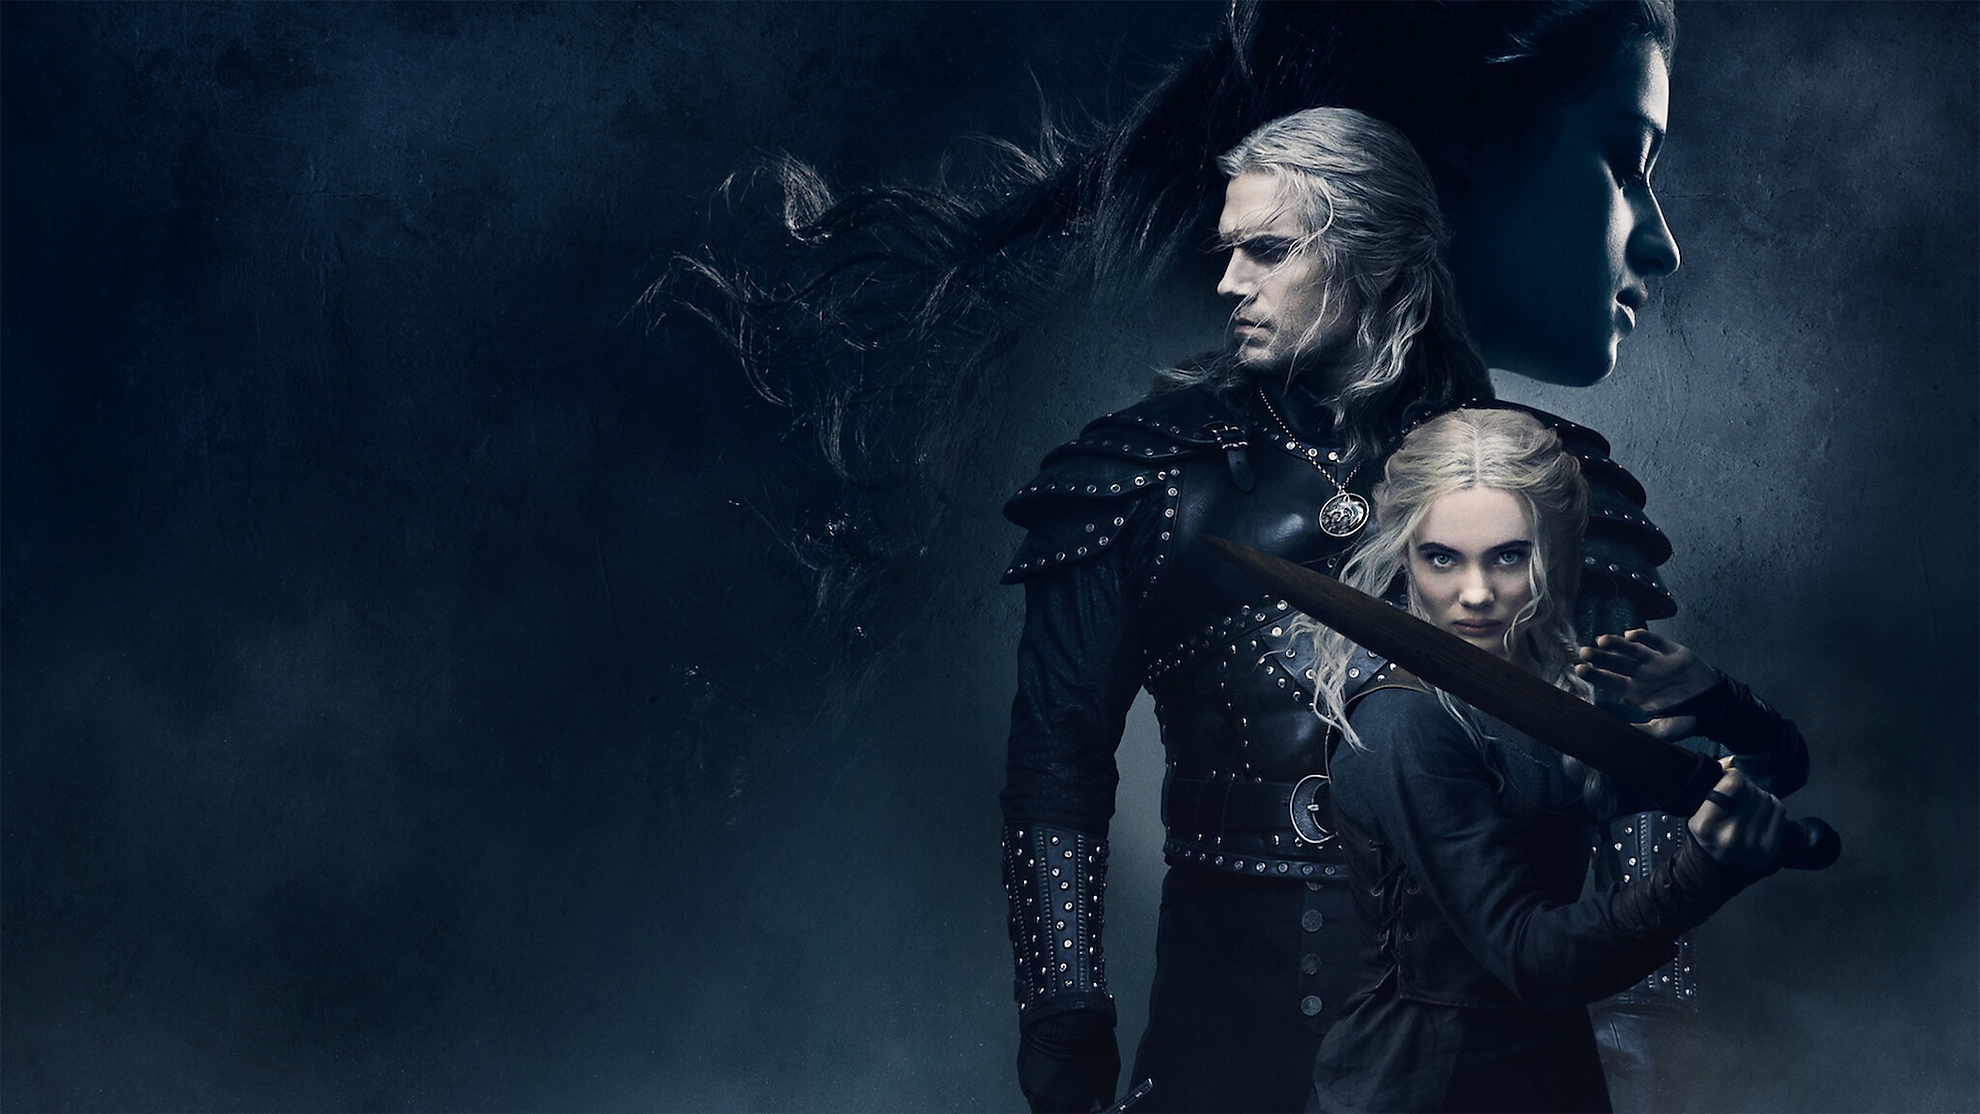 Rivialı Geralt rolünde Henry Cavill ile The Witcher’ın sahne arkası